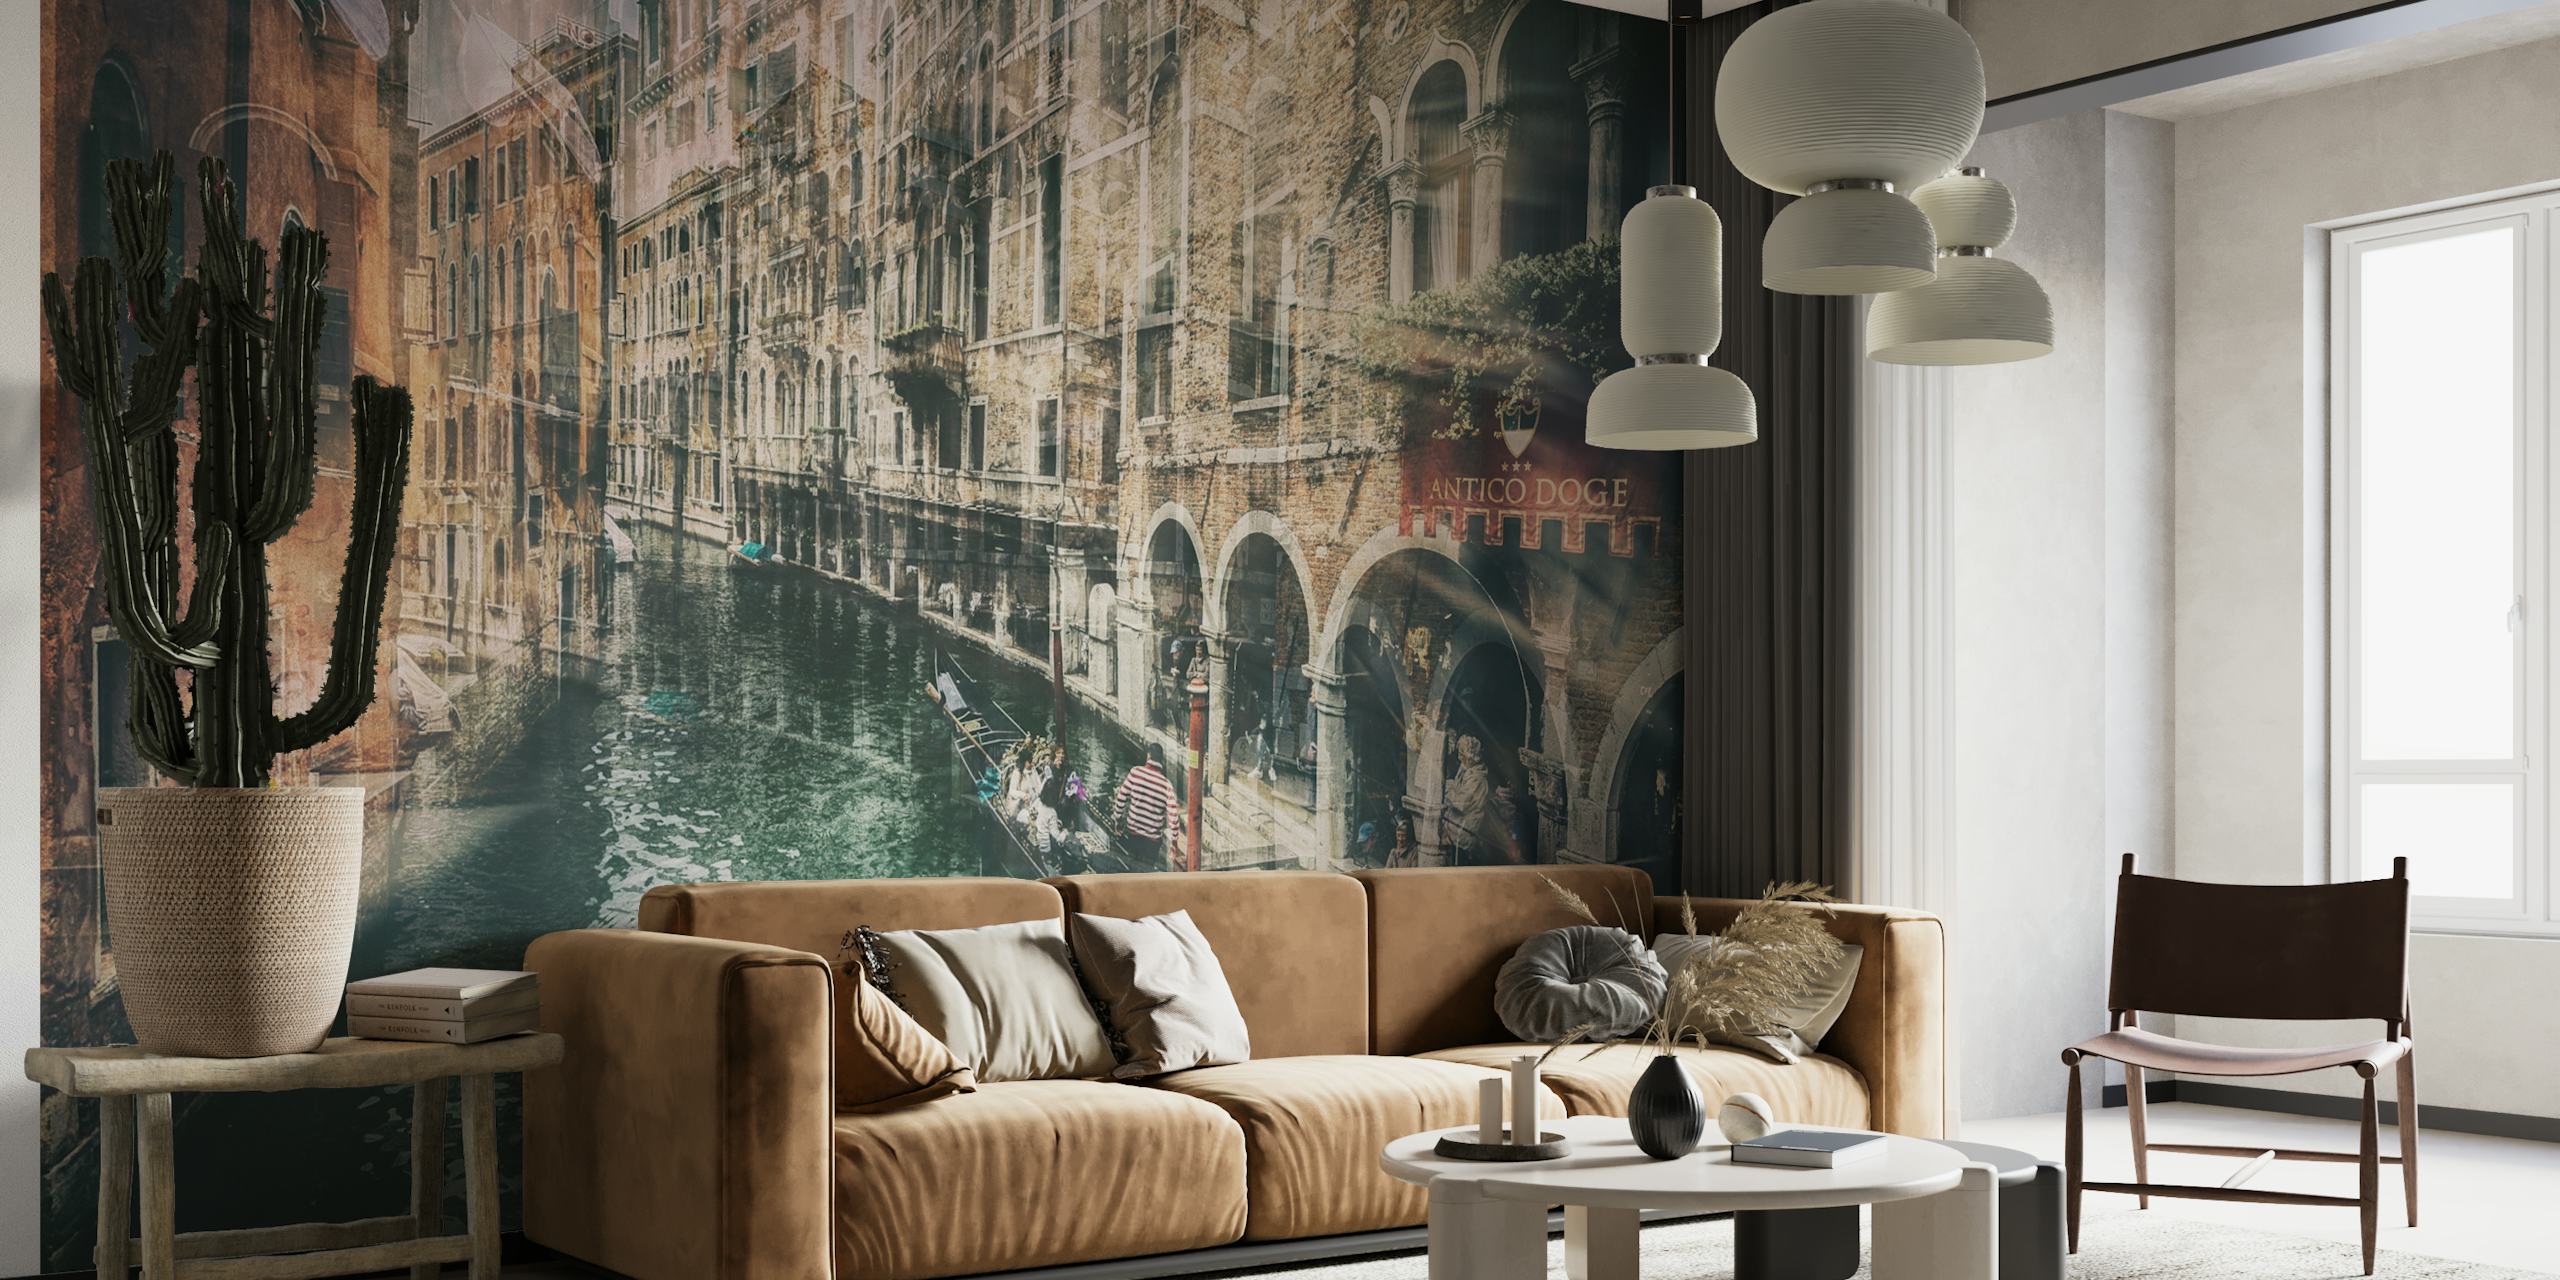 Mural de parede em estilo vintage representando um canal veneziano com arquitetura histórica